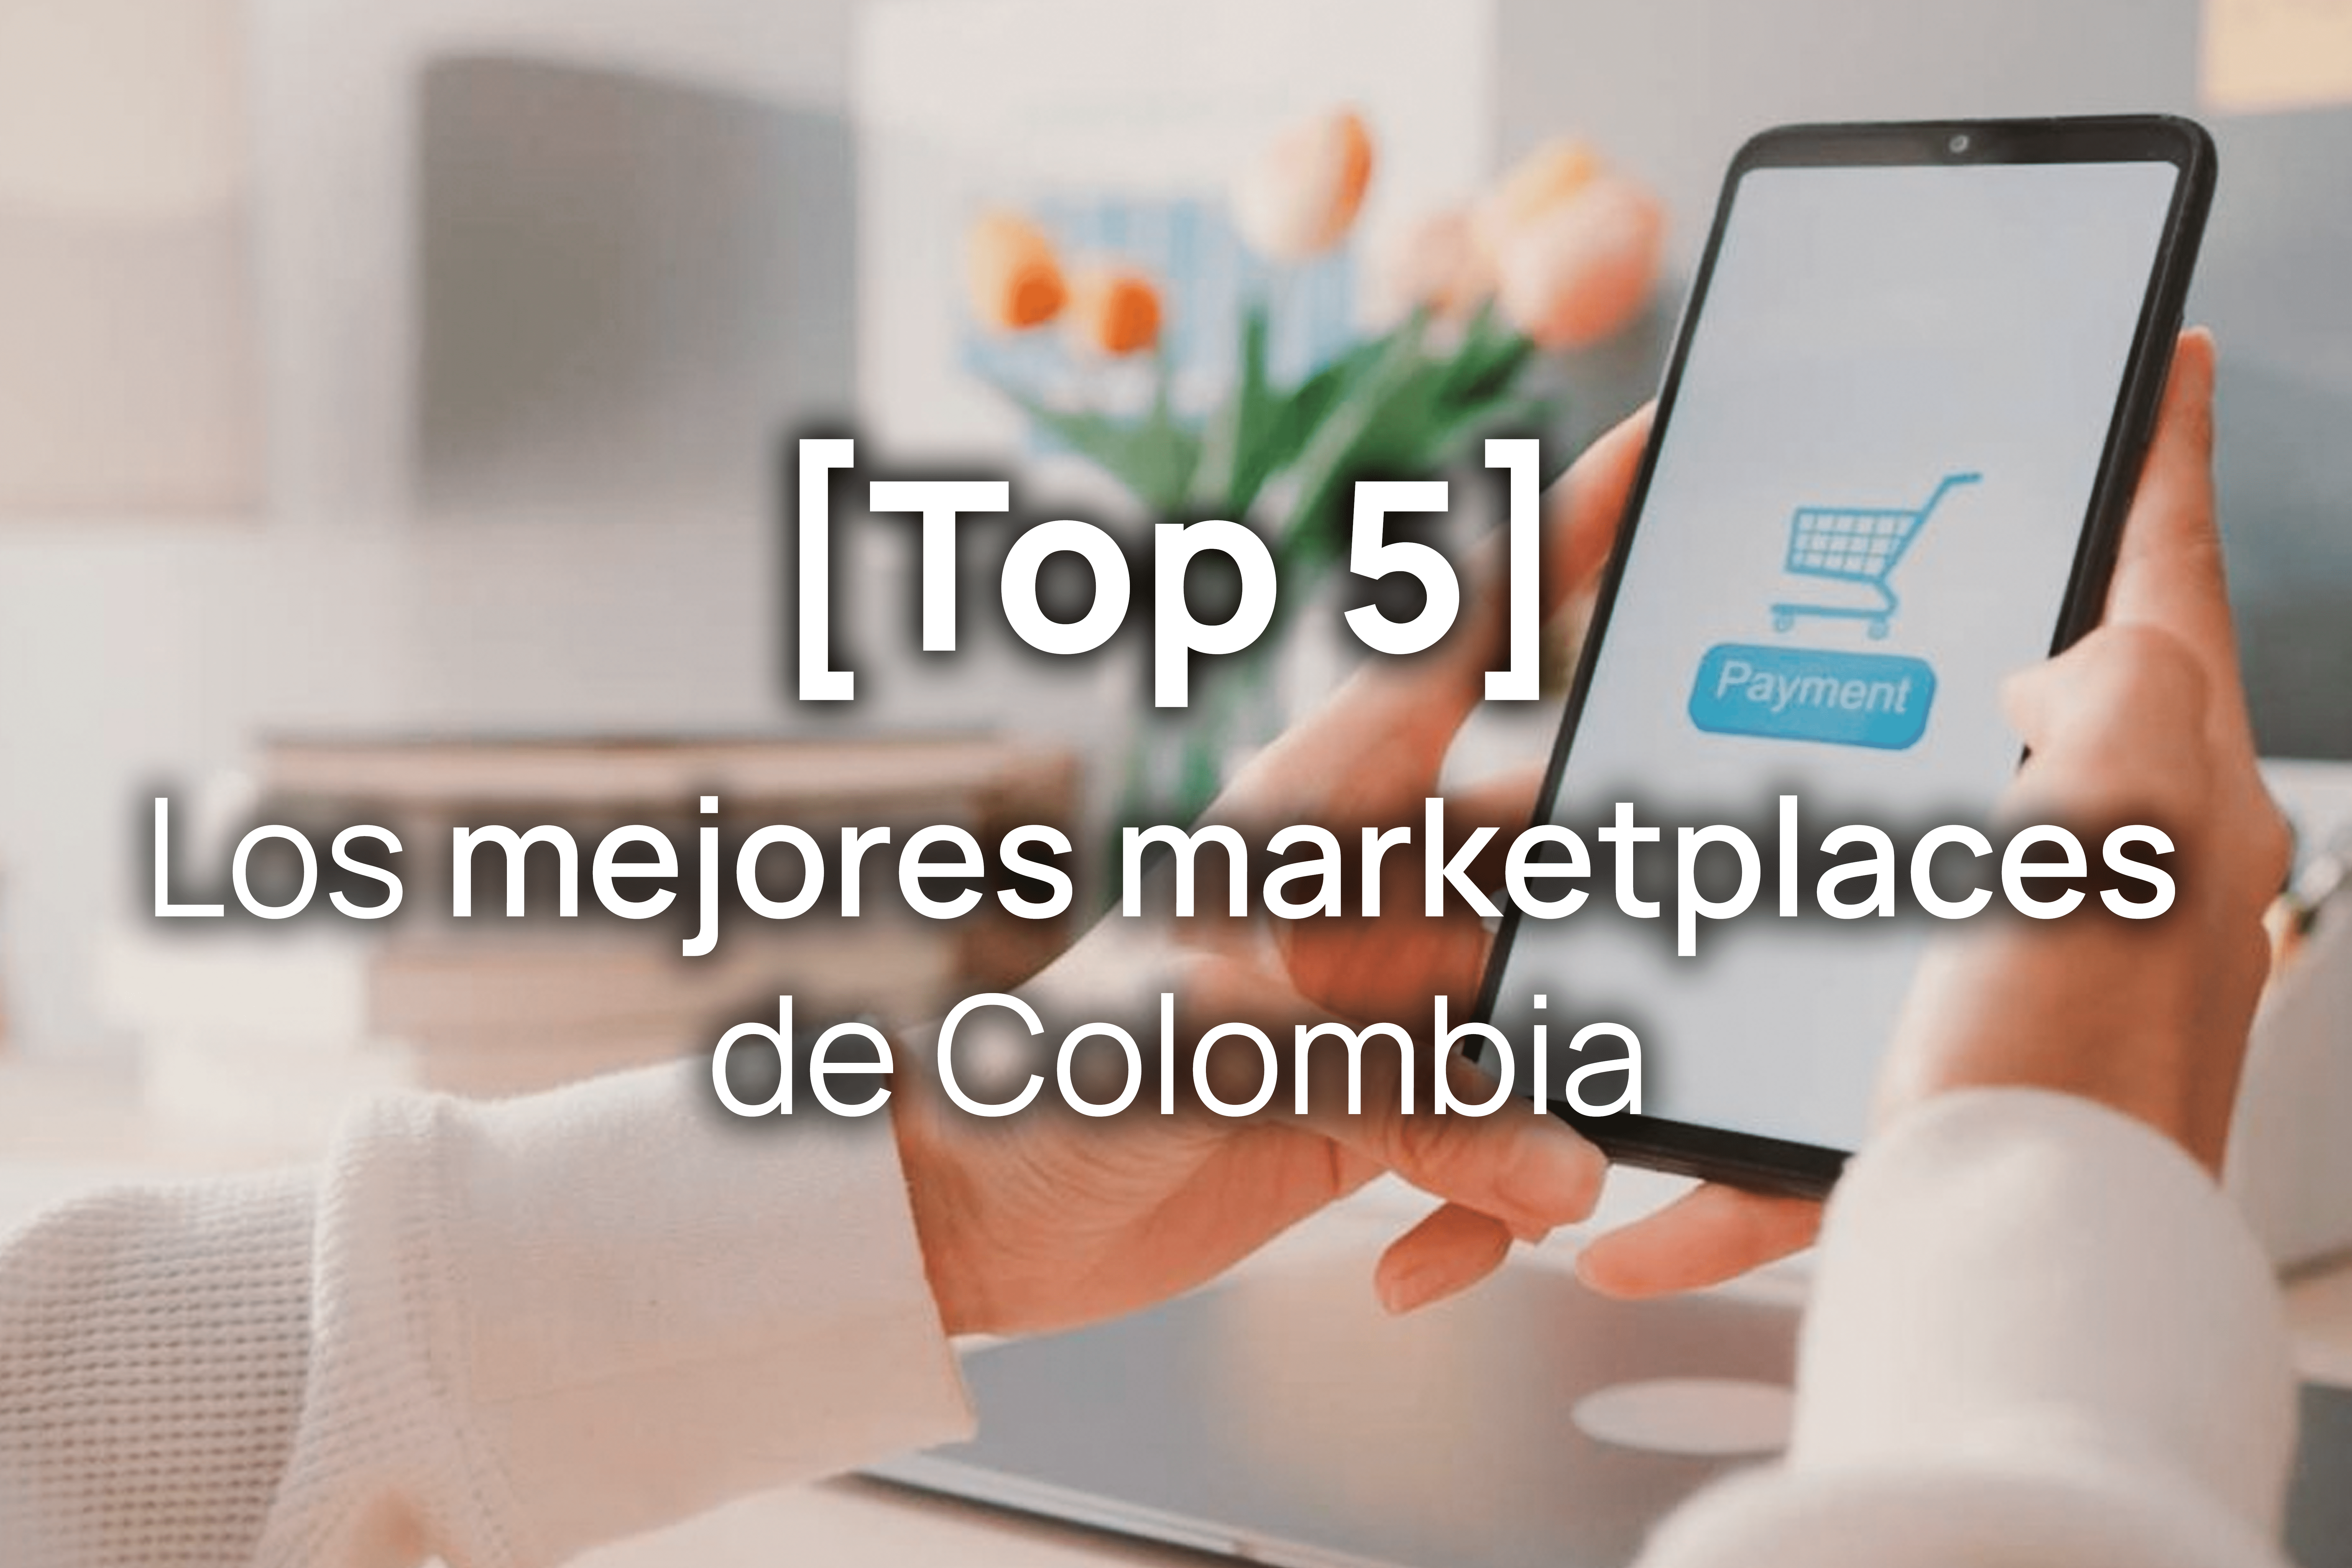 Los mejores marketplaces de Colombia [Top 5]